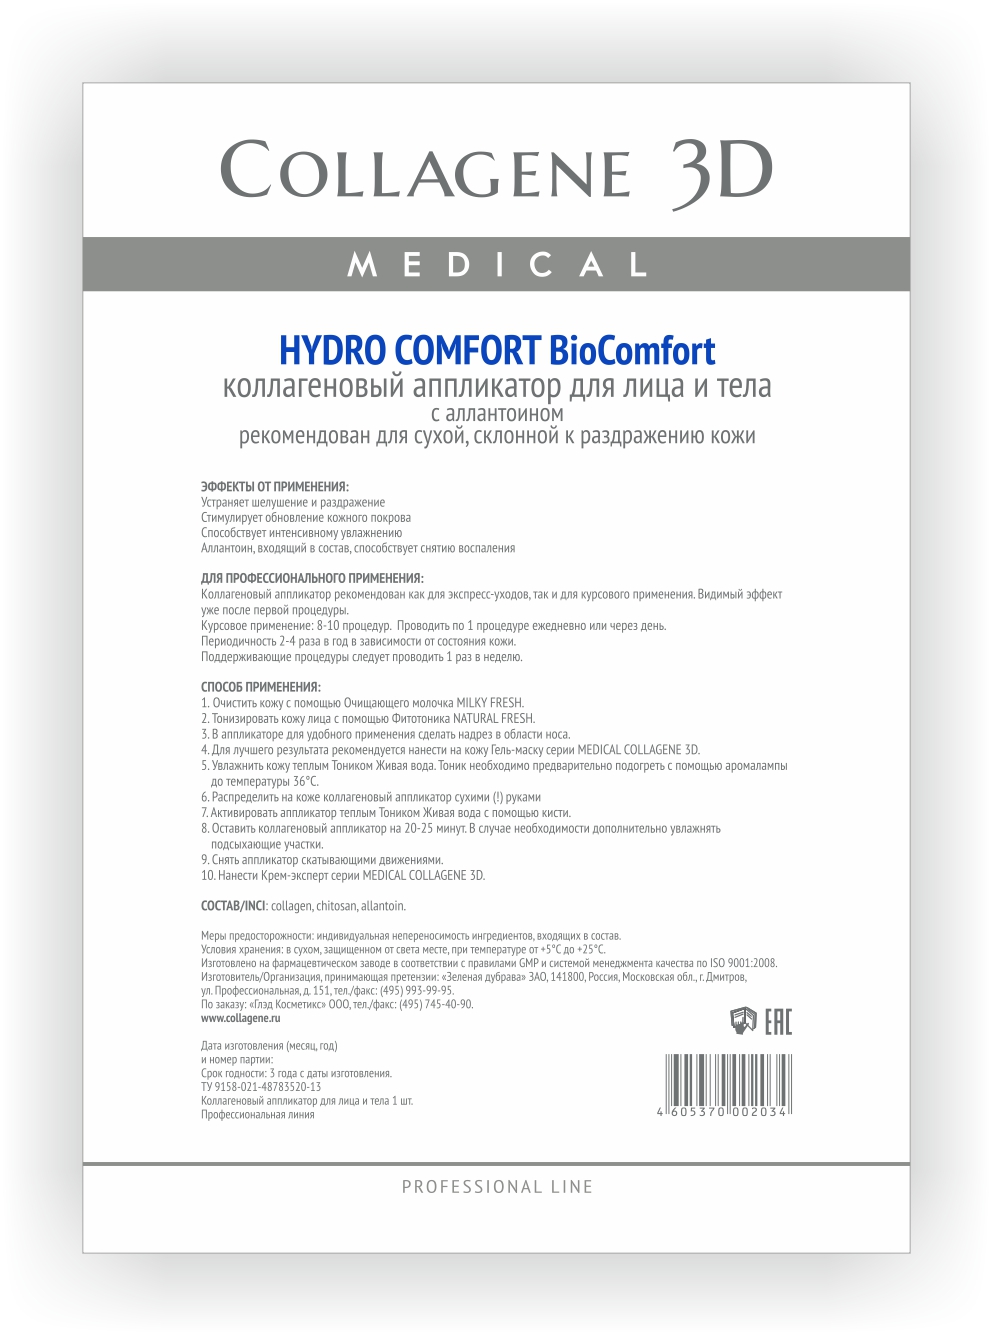 MEDICAL COLLAGENE 3D Аппликатор коллагеновый с аллантоином для лица и тела / Hydro Comfort А4